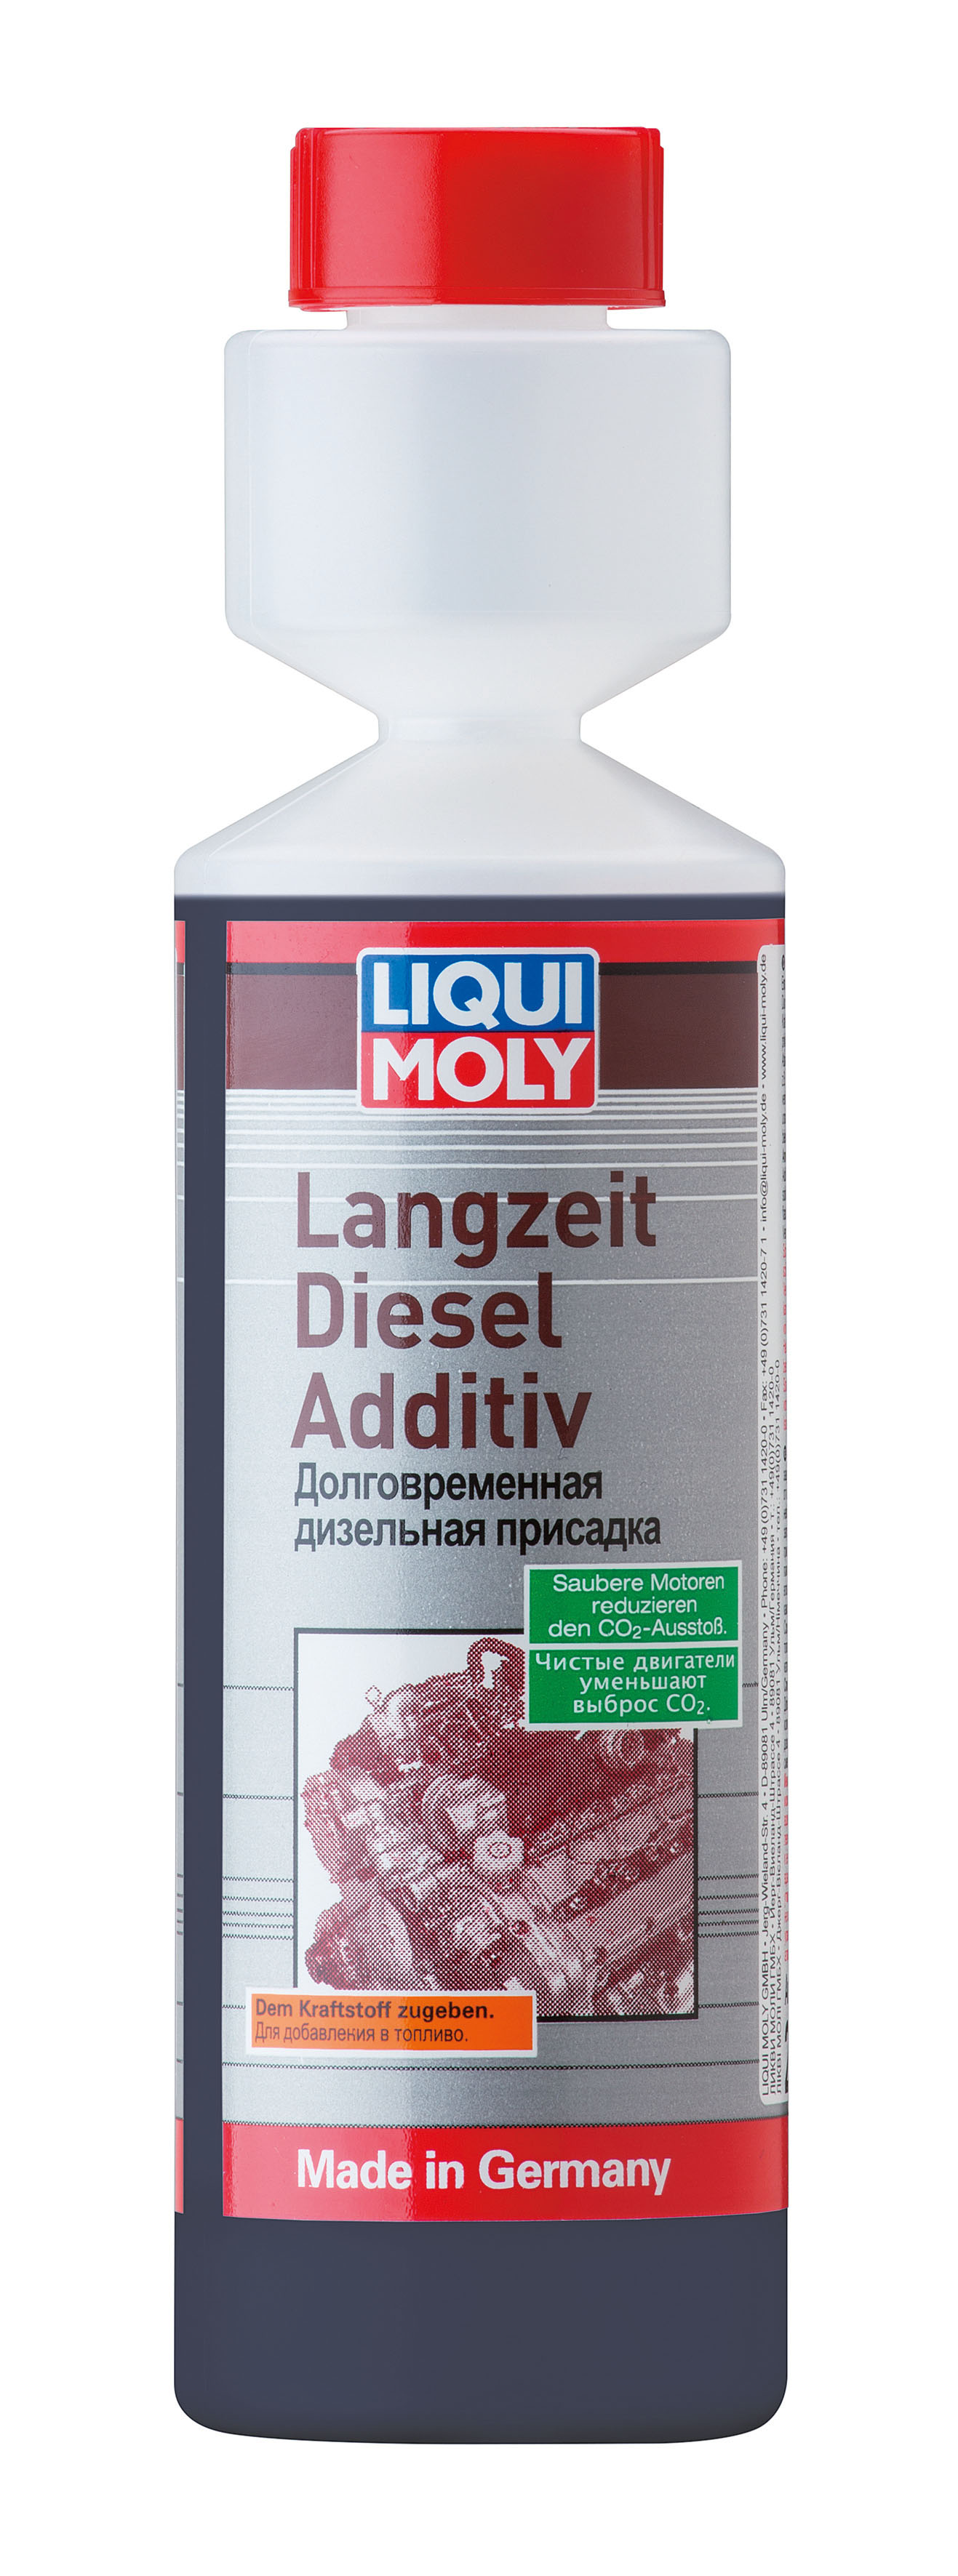 Долговременная дизельная присадка Langzeit Diesel Additiv